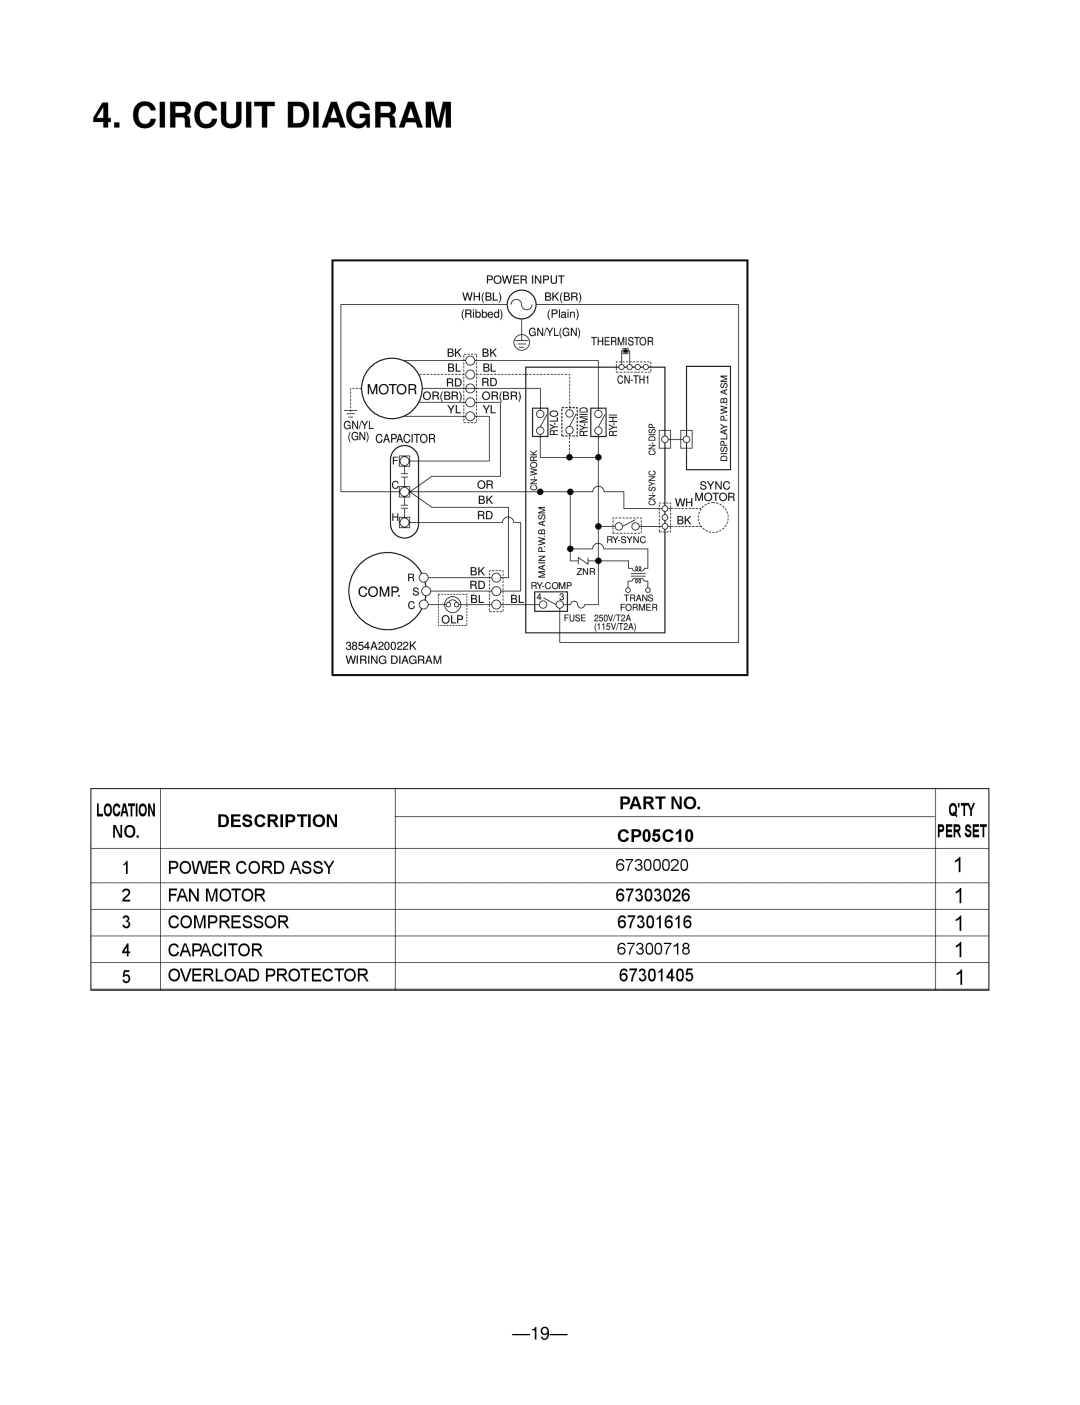 Friedrich CP05C10 manual Circuit Diagram, Description, Qty Per Set 